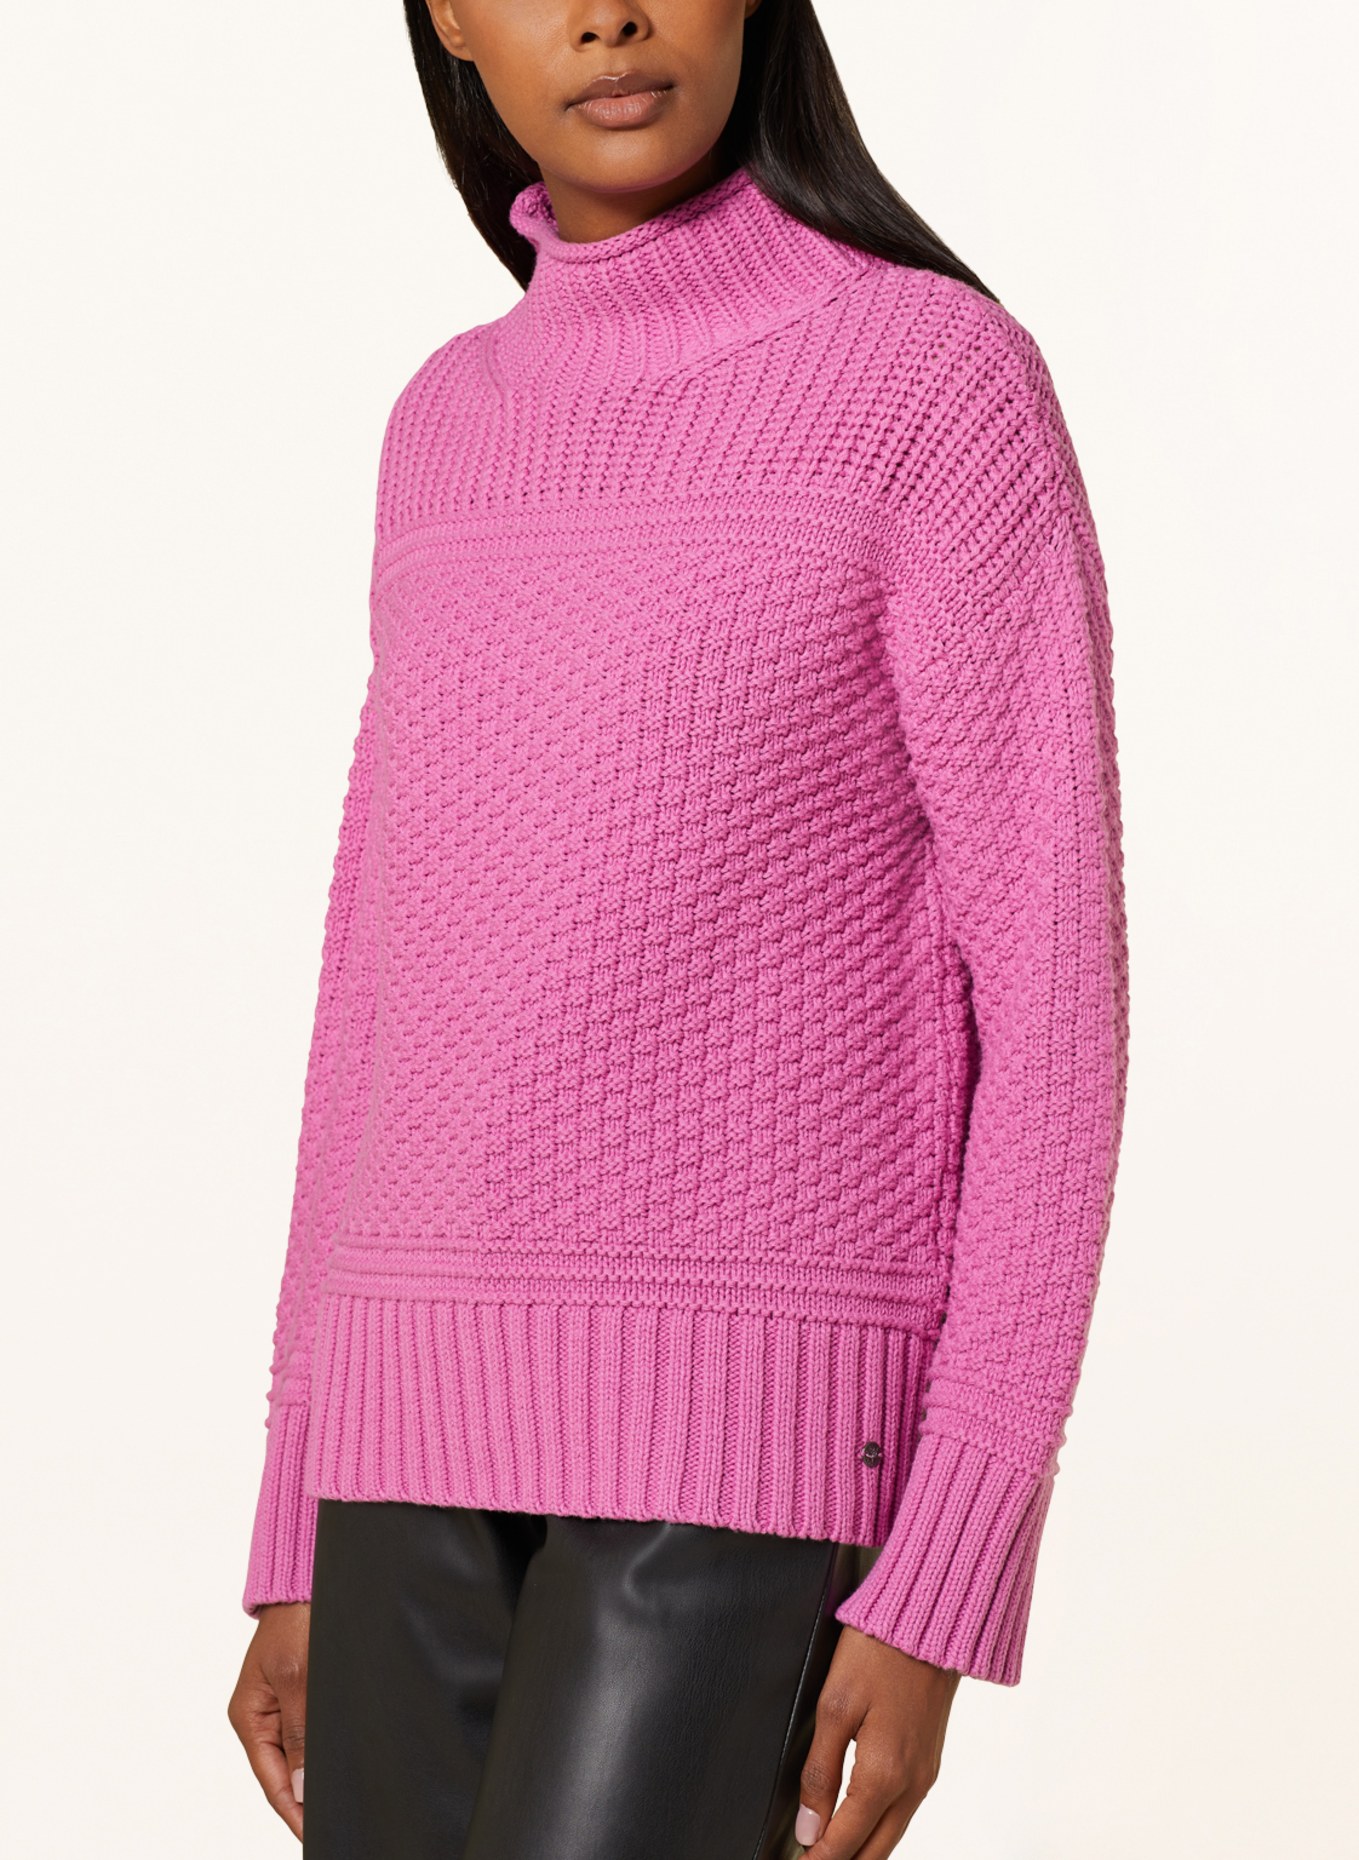 monari Sweater, Color: PINK (Image 4)